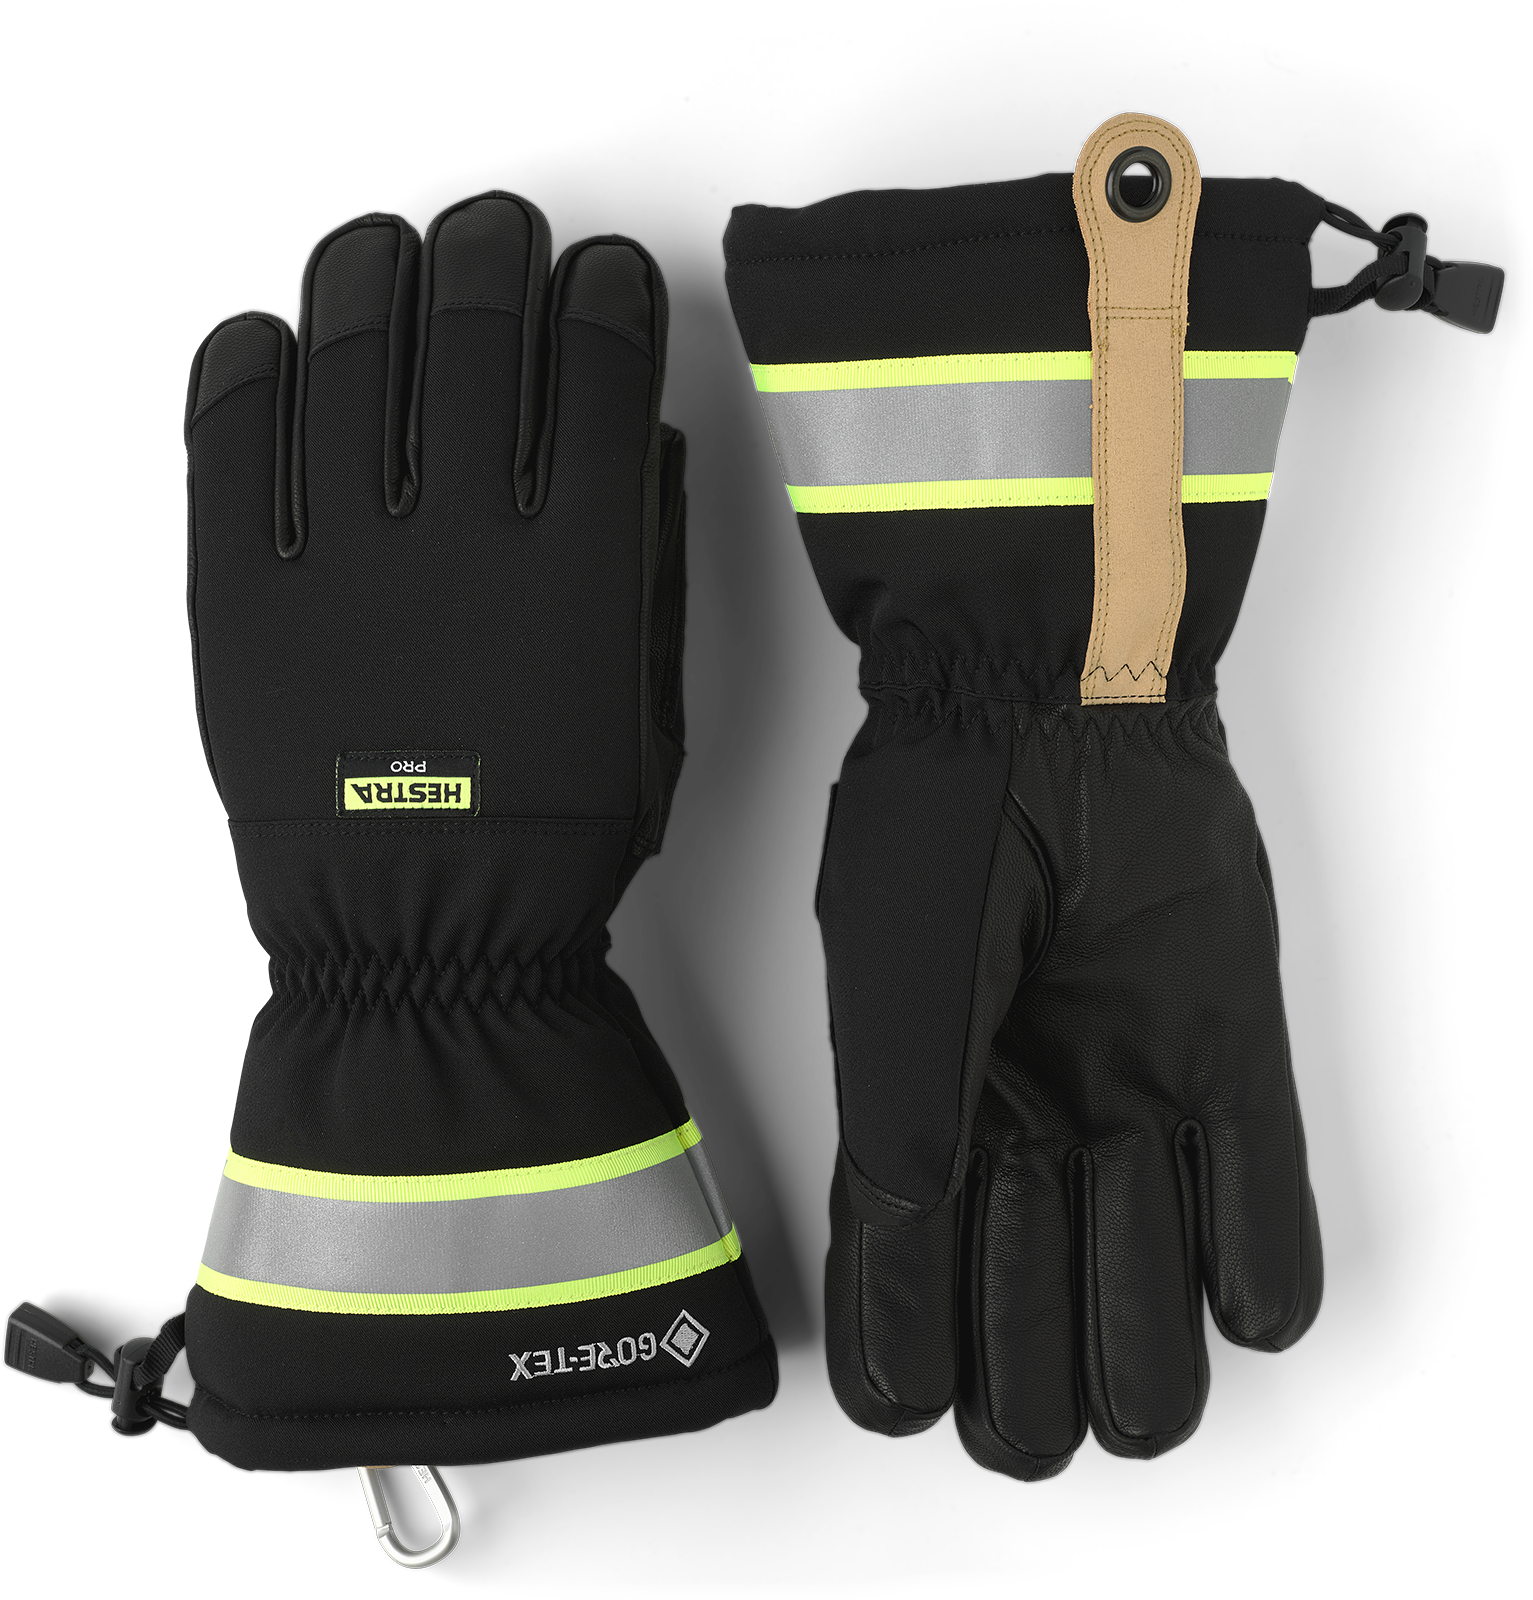 Handske Hestra GoreTex Pro 5 fingrar